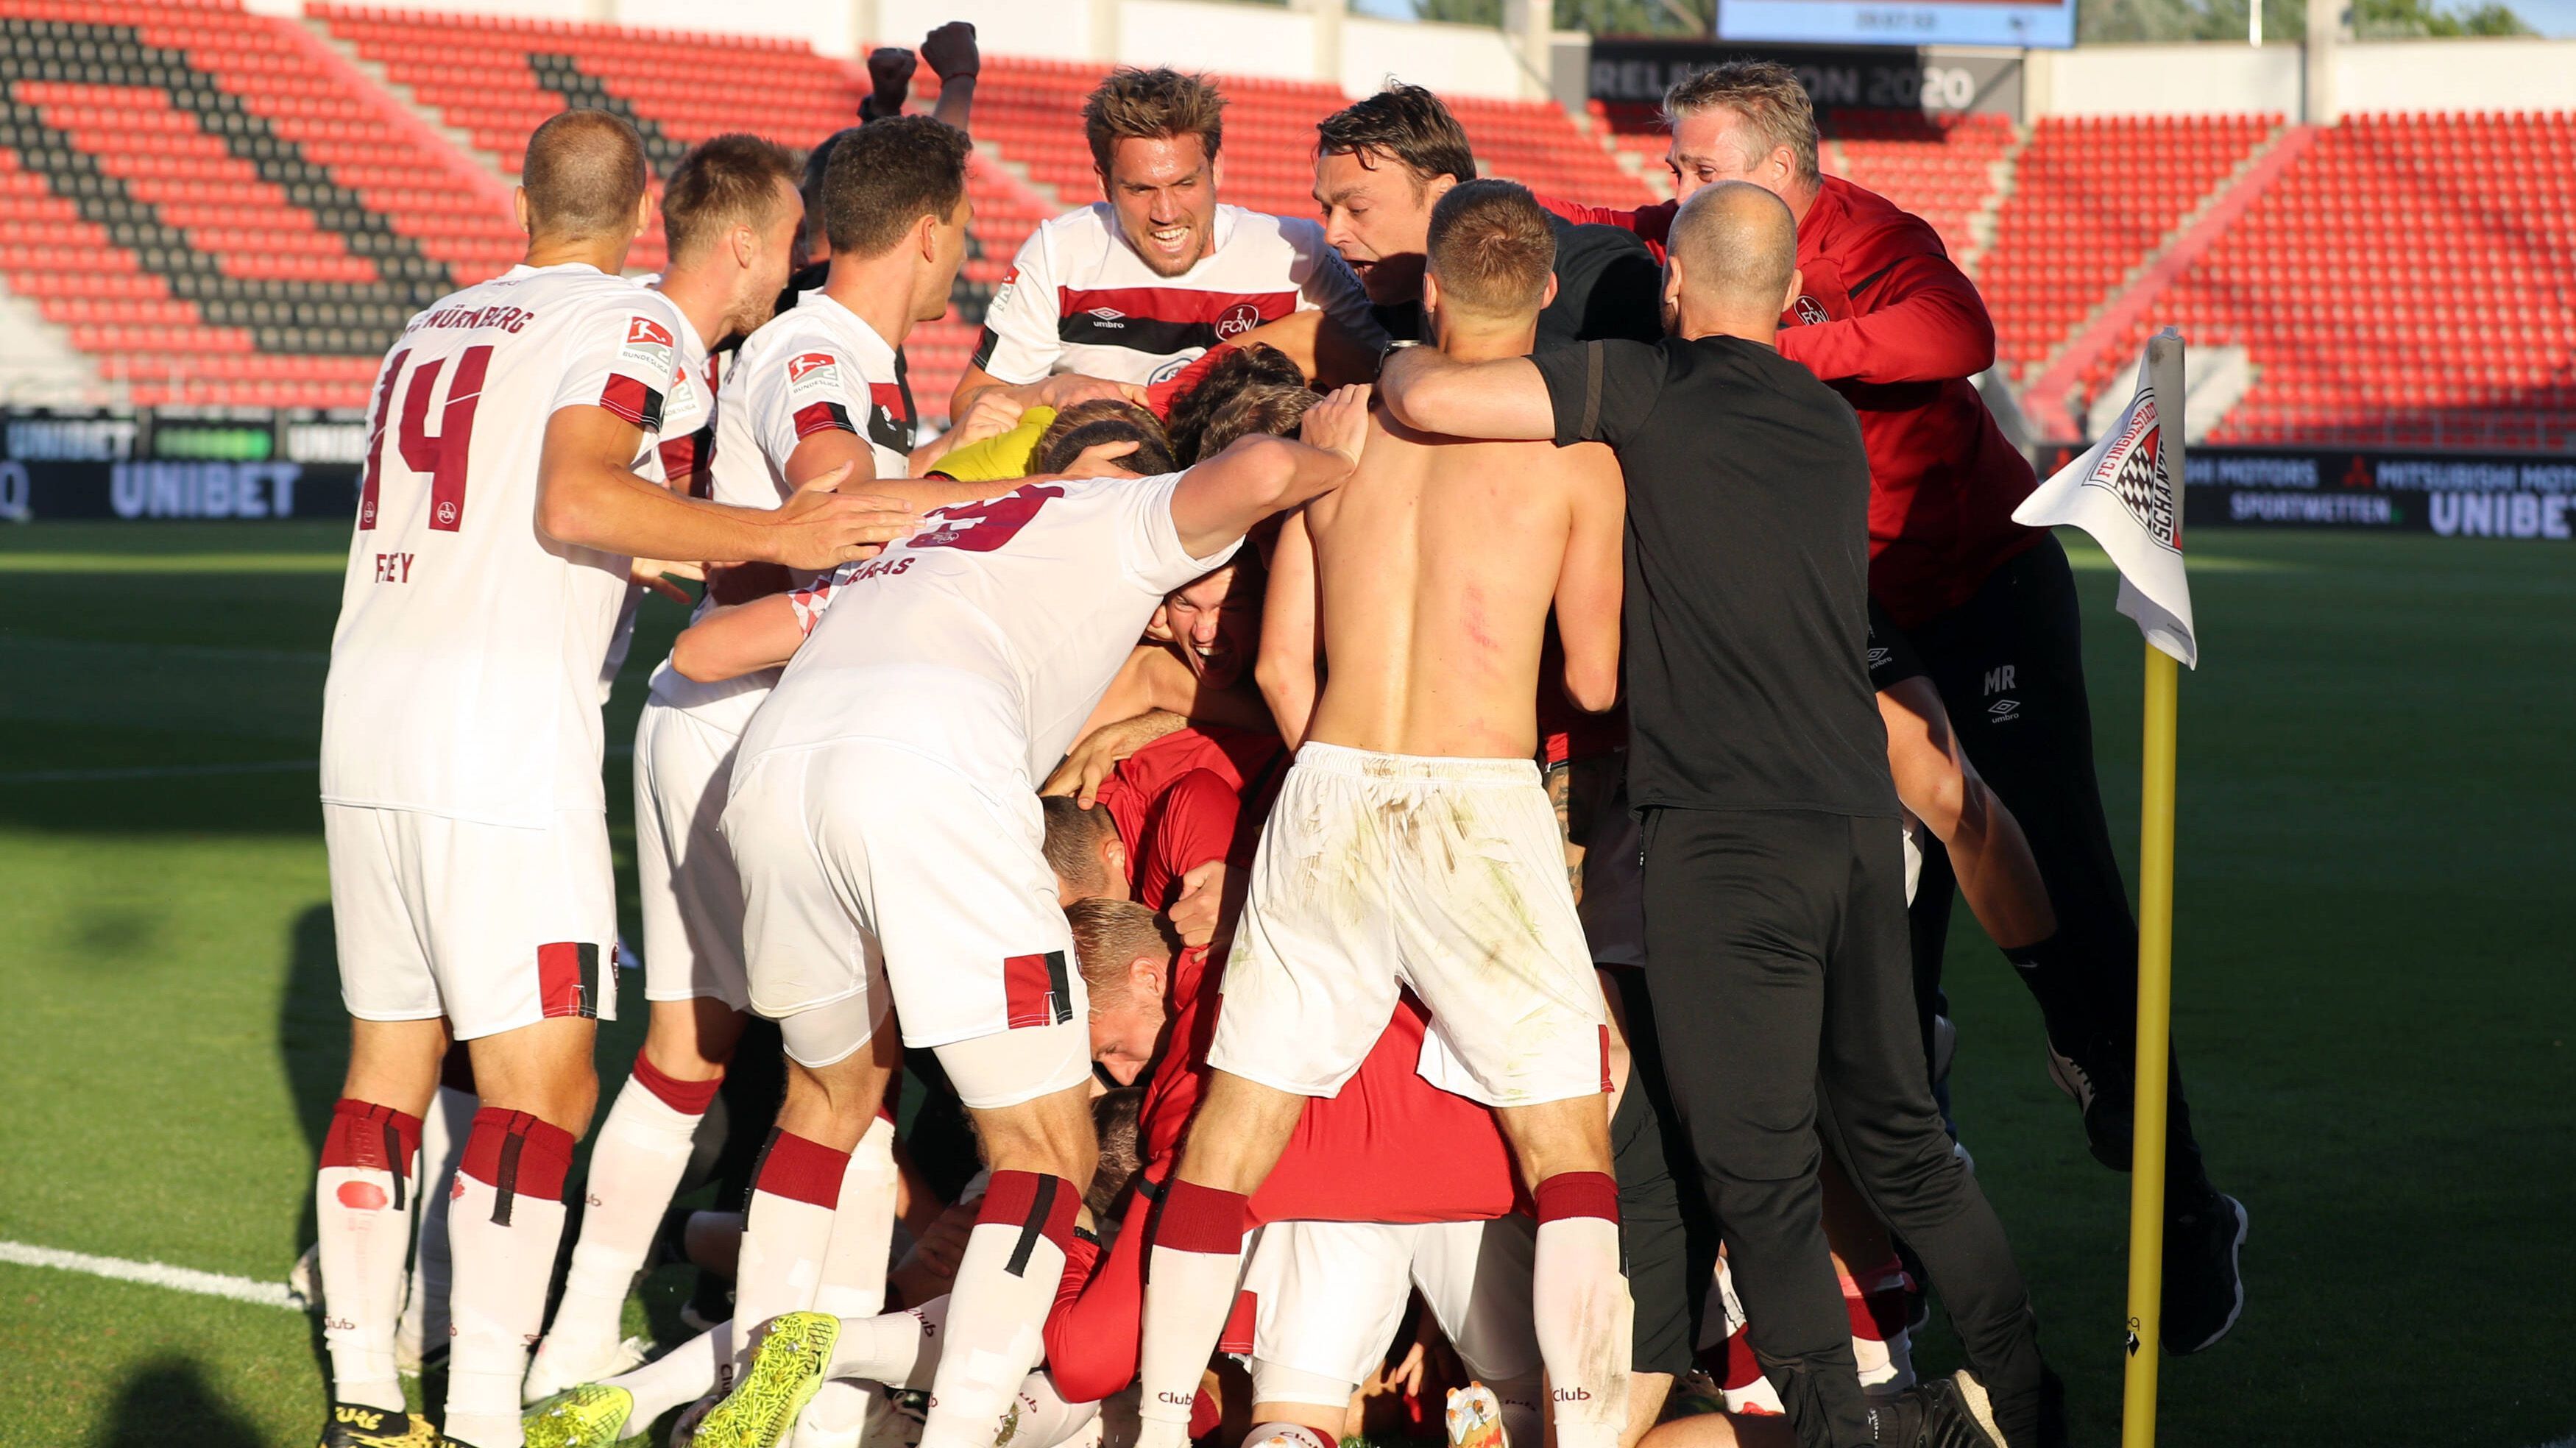 
                <strong>2018/19: 1. FC Nürnberg</strong><br>
                Die Franken erlebten nach ihrem Abstieg im Mai 2019 einen fast beispiellosen Absturz. Vier Trainer verschließ der "Glubb" in seinen 34 Saisonspielen und den zwei Relegationsspielen gegen den FC Ingolstadt. Durch eine desolate Rückrunde stürzte der einstige deutsche Rekordmeister in den Abstiegskampf und rutschte am 34. Spieltag noch auf den Relegationsrang. Nach einem eigentlich sicheren 2:0-Sieg im Hinspiel, drehten die Ingolstädter das Ergebnis noch um und standen mit einem Fuß in der 2. Liga, ehe Fabian Schleusener Nürnberg per Last-Minute-Treffer erlöste.
              